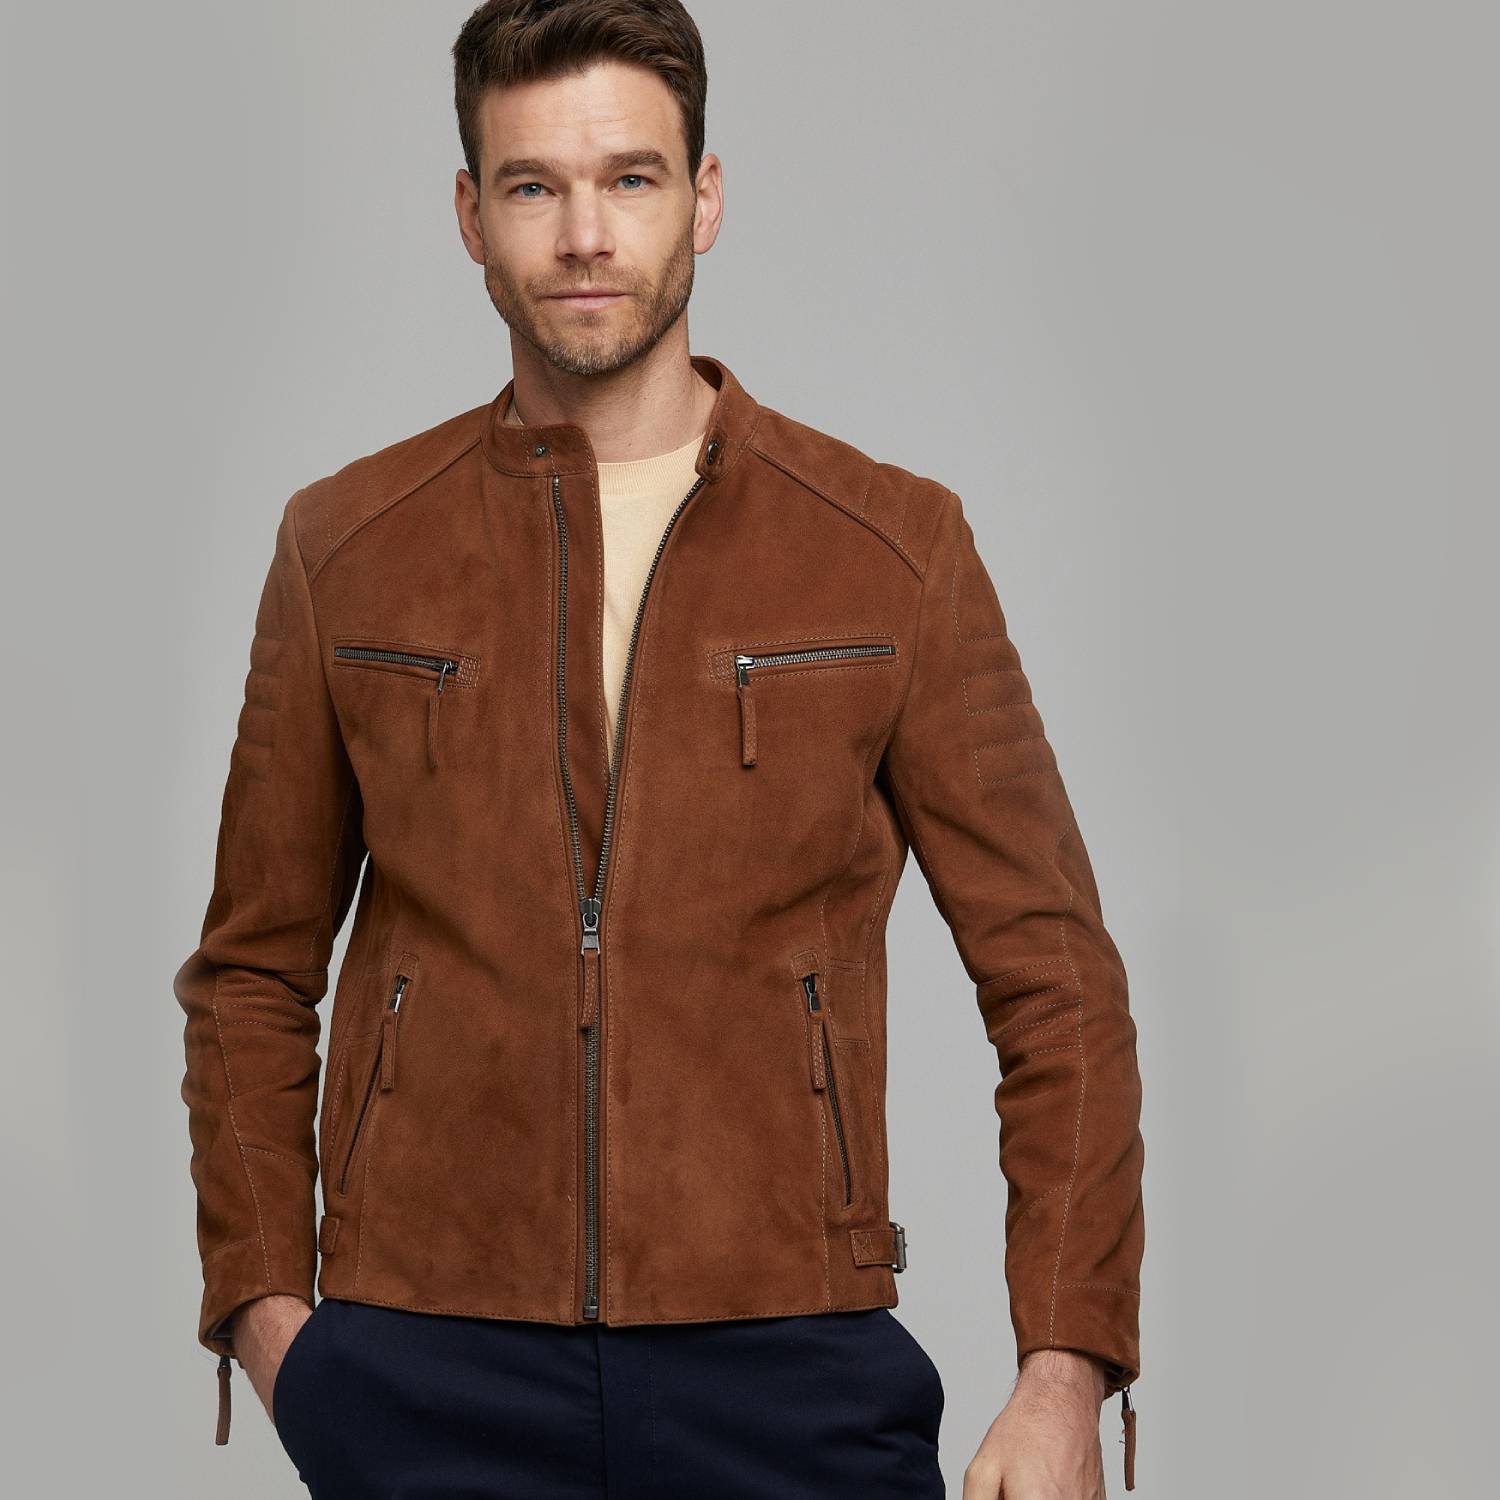 Middellandse Zee Van toepassing schroot Buy Kevin Brown Suede Leather Jacket